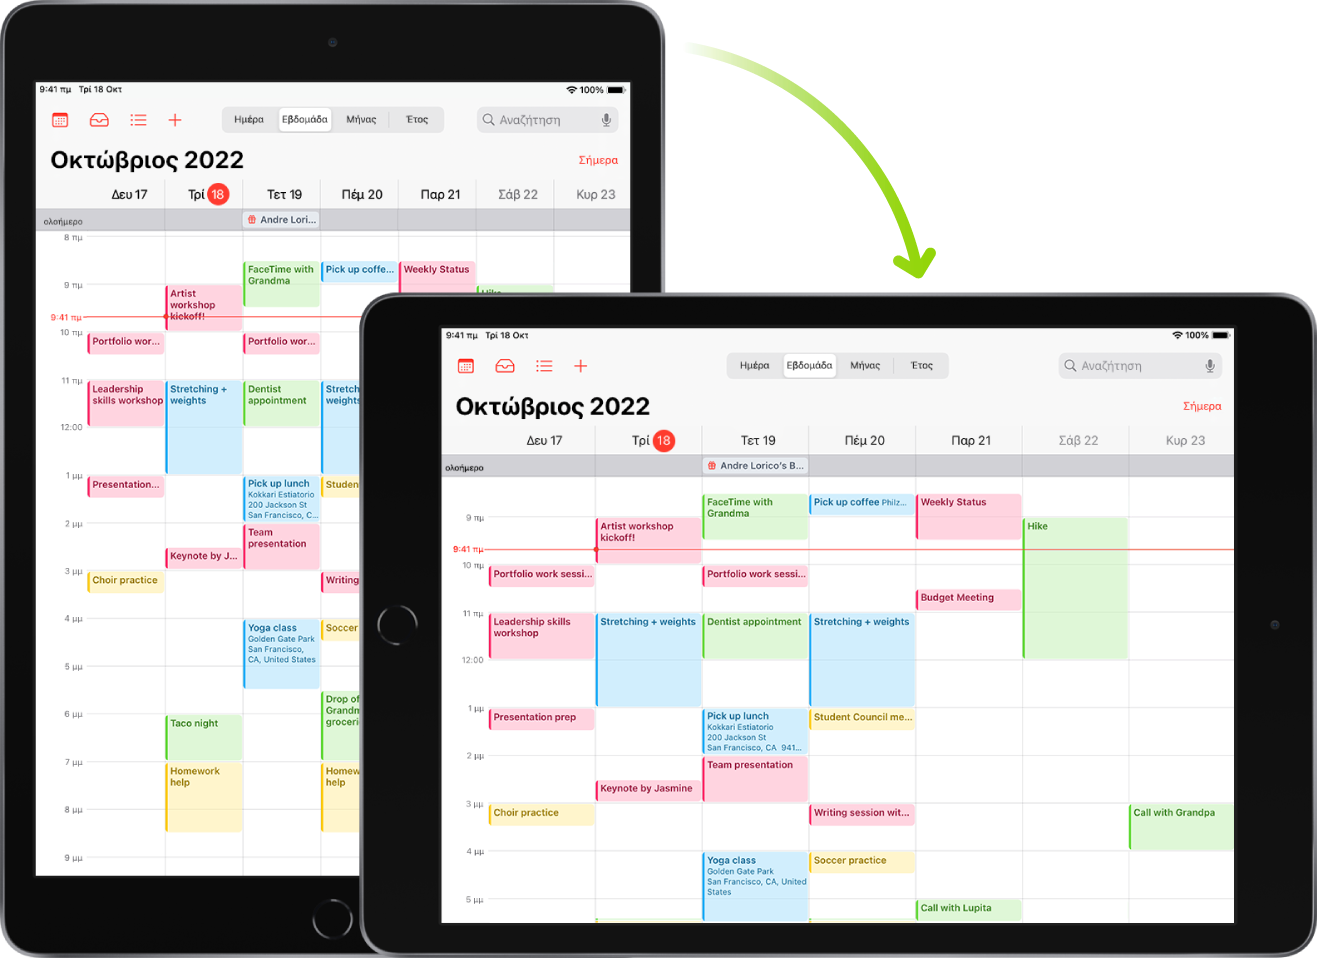 Στο παρασκήνιο, στο iPad εμφανίζεται μια οθόνη του Ημερολογίου σε κατακόρυφο προσανατολισμό. Στο προσκήνιο, το iPad περιστρέφεται και εμφανίζεται η οθόνη του Ημερολογίου σε οριζόντιο προσανατολισμό.